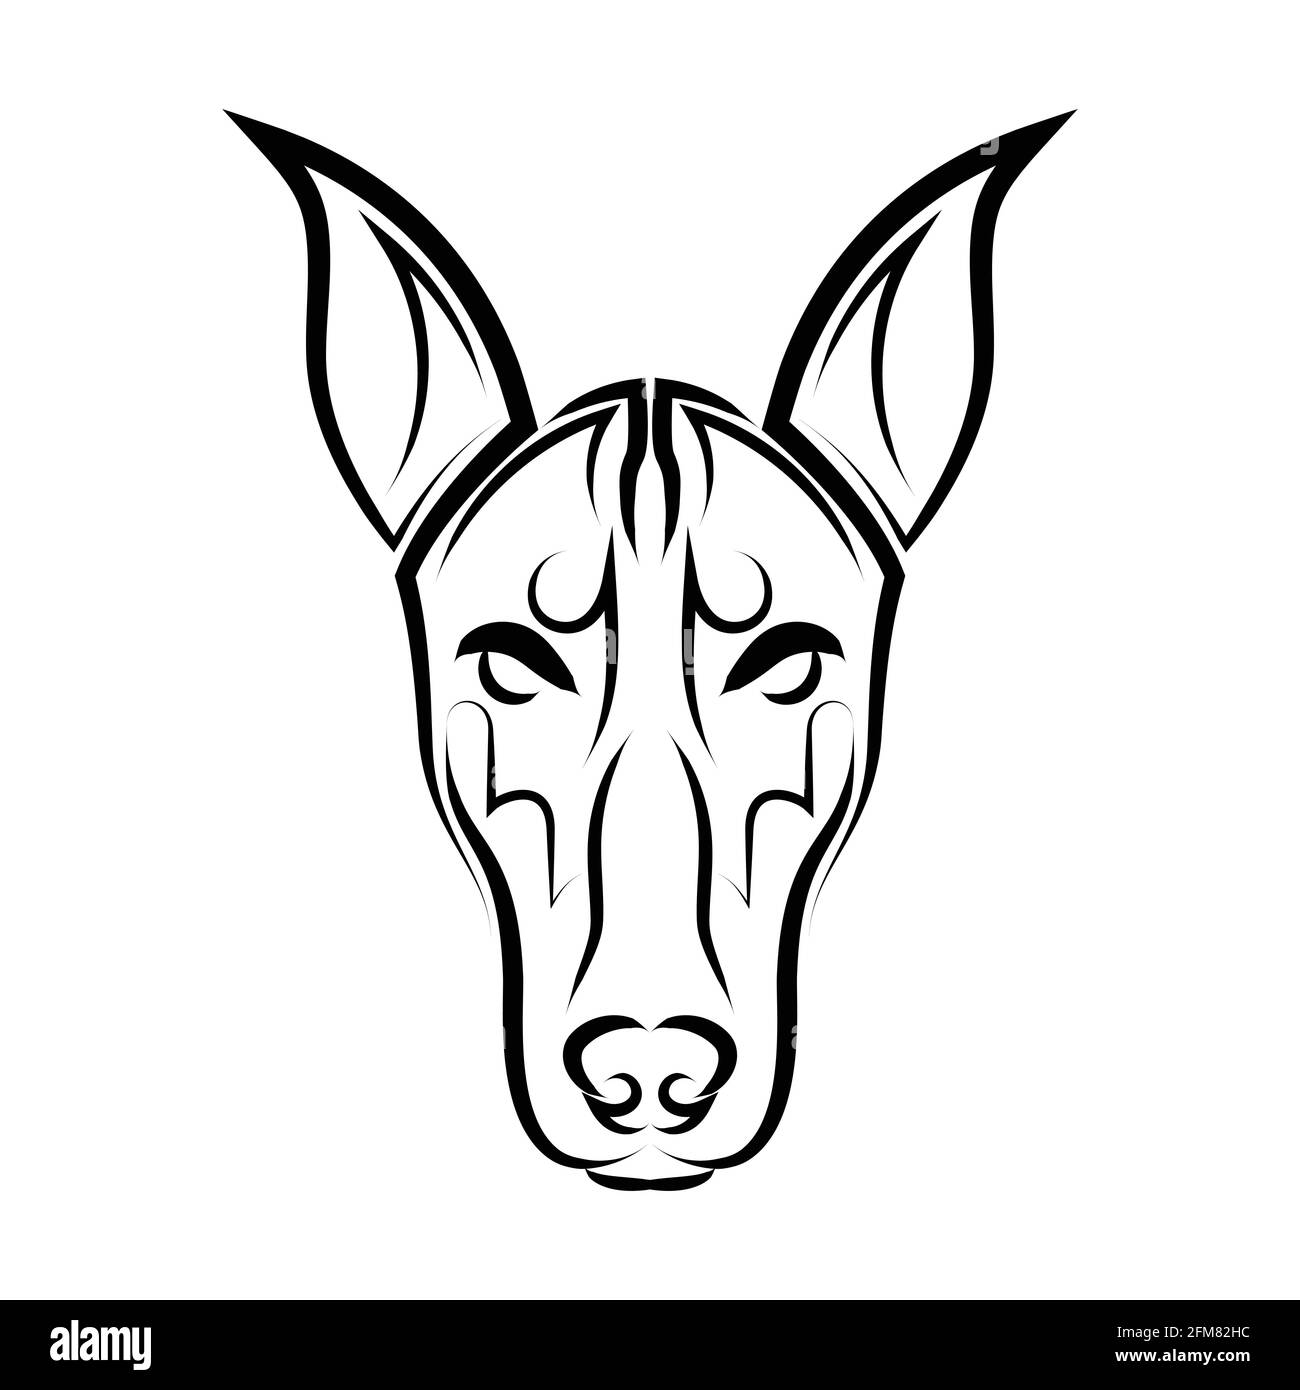 Art noir et blanc de la tête de chien Doberman Pinscher. Bon usage pour symbole, mascotte, icône, avatar, tatouage, T-shirt, logo ou tout autre motif que vous voulez Illustration de Vecteur